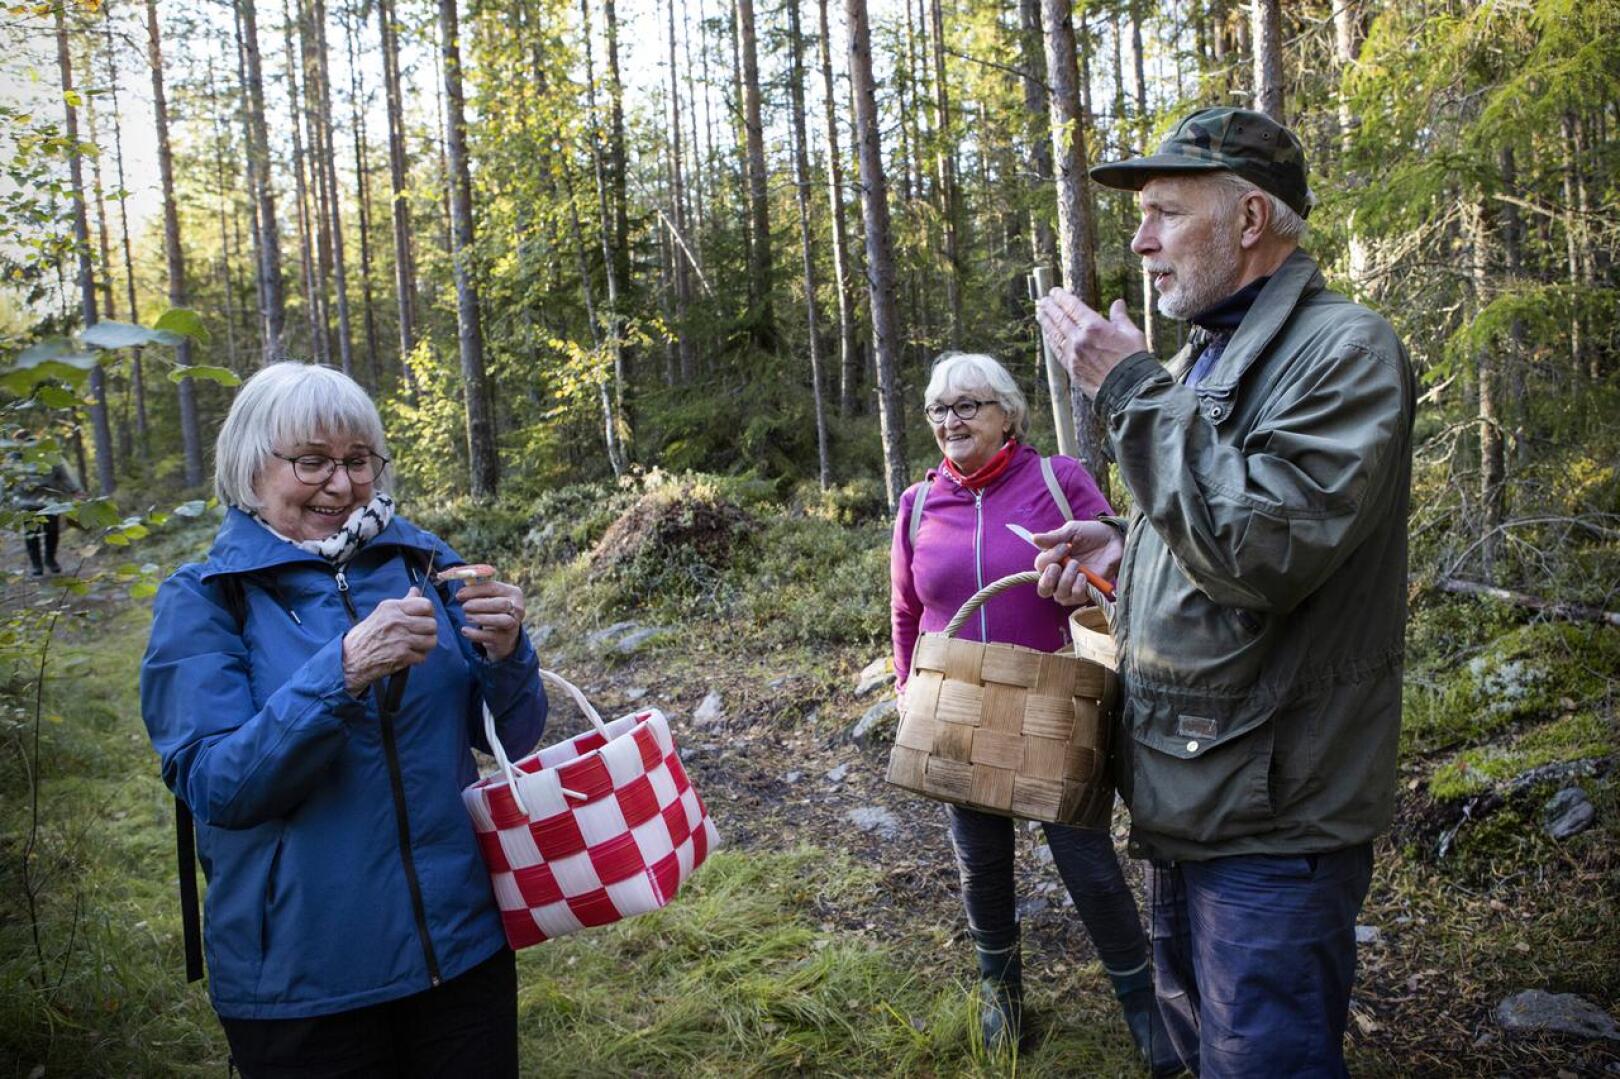 Sieniseuran puheenjohtaja Kenneth Bergroth opastaa sienten tunnistuksessa.– Sieniseuran mukana on turvallista tunnistaa sieniä ja kulkea metsässä, Pirkko-liisa Rahja ja Majlis Känsäkangas. 